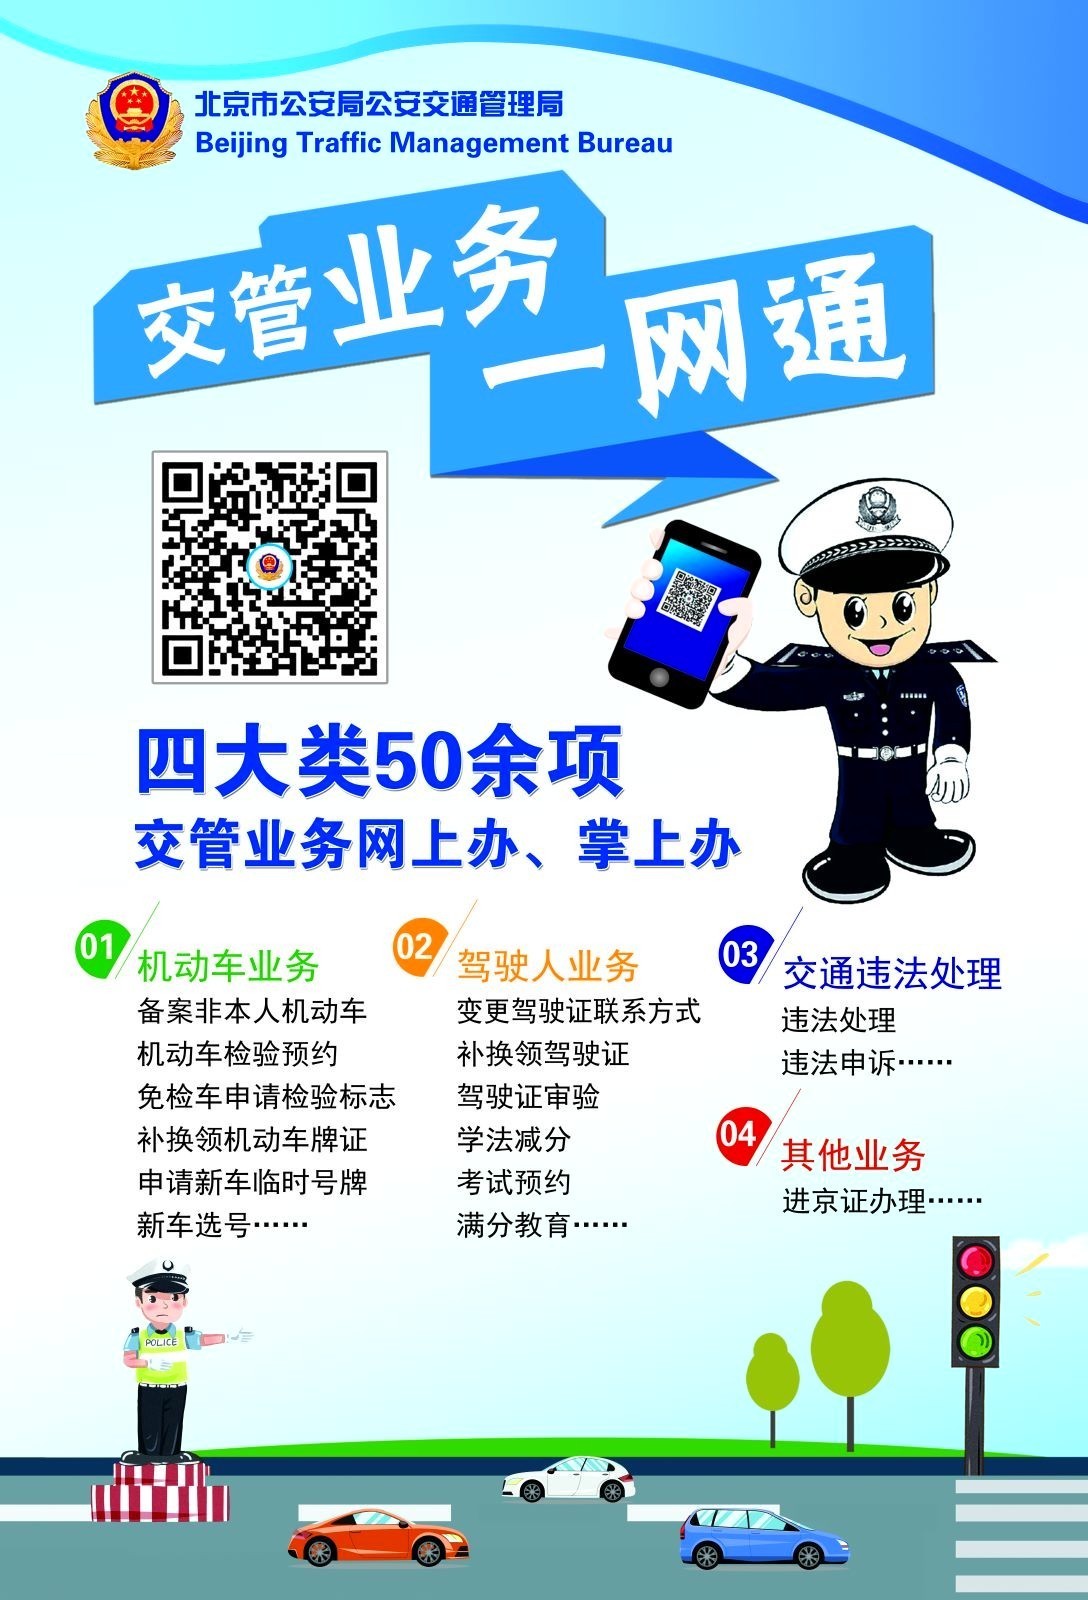 如果你还没有下载安装交管12123app和北京交警app的,请立即扫码